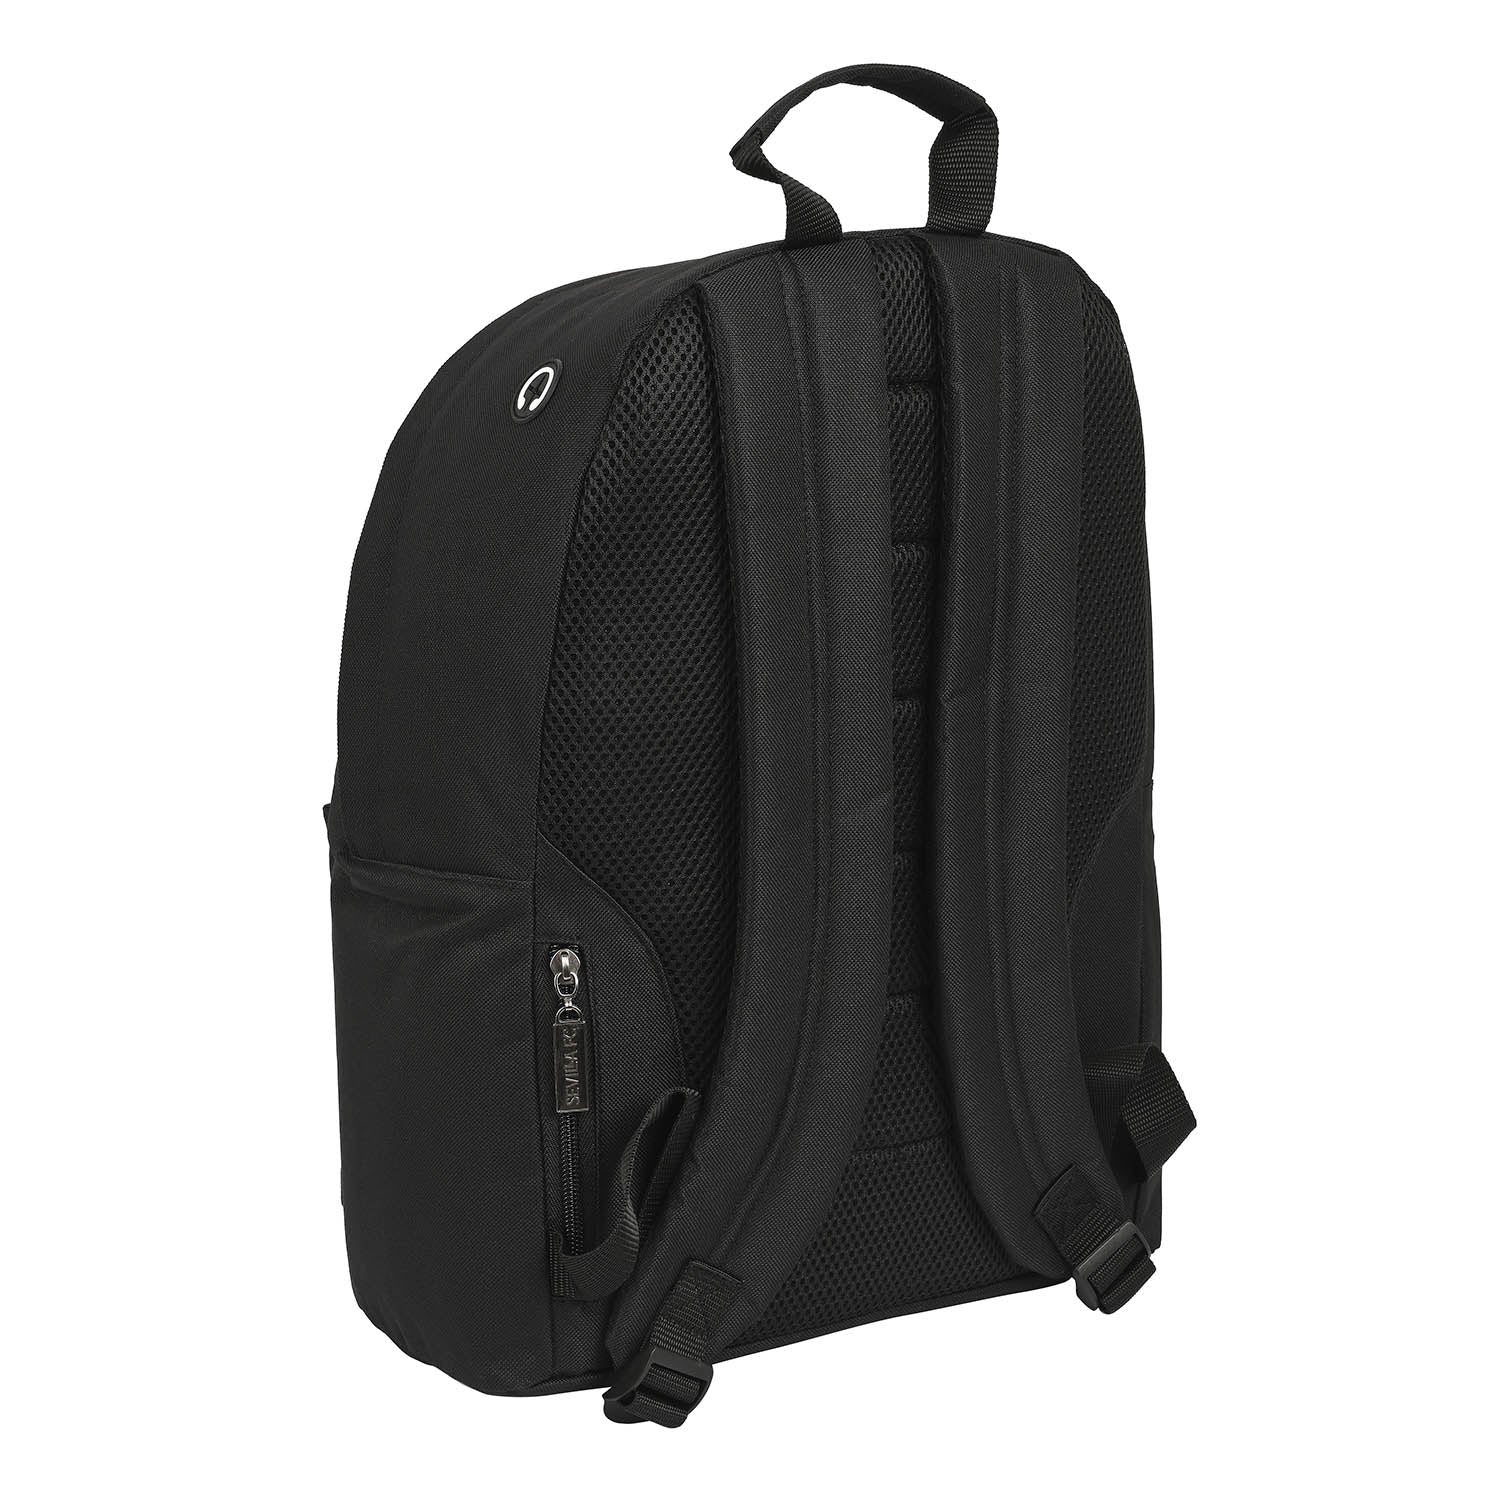 Black backpack for laptop